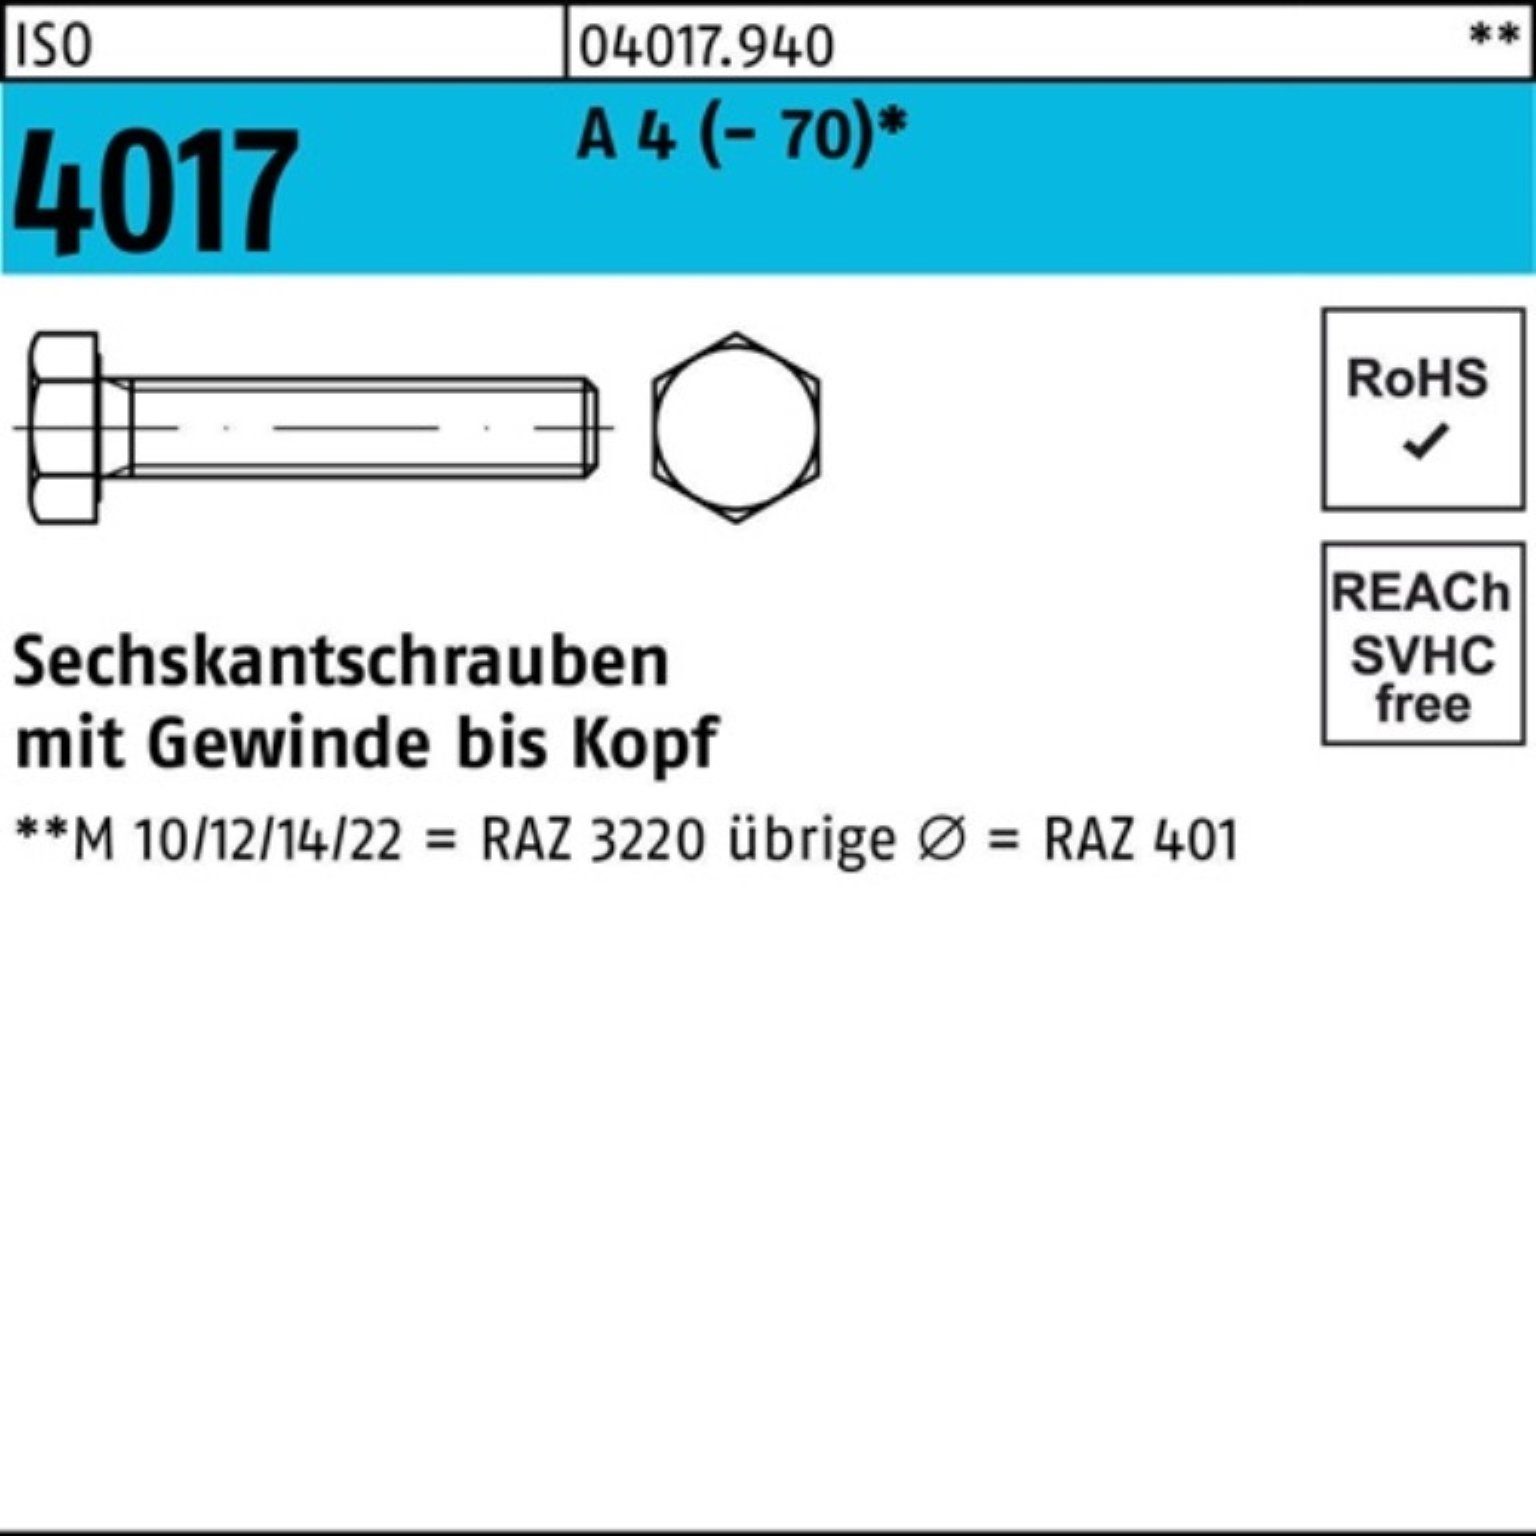 Bufab Sechskantschraube 100er Pack Sechskantschraube ISO 4017 VG M12x 35 A 4 (70) 100 Stück